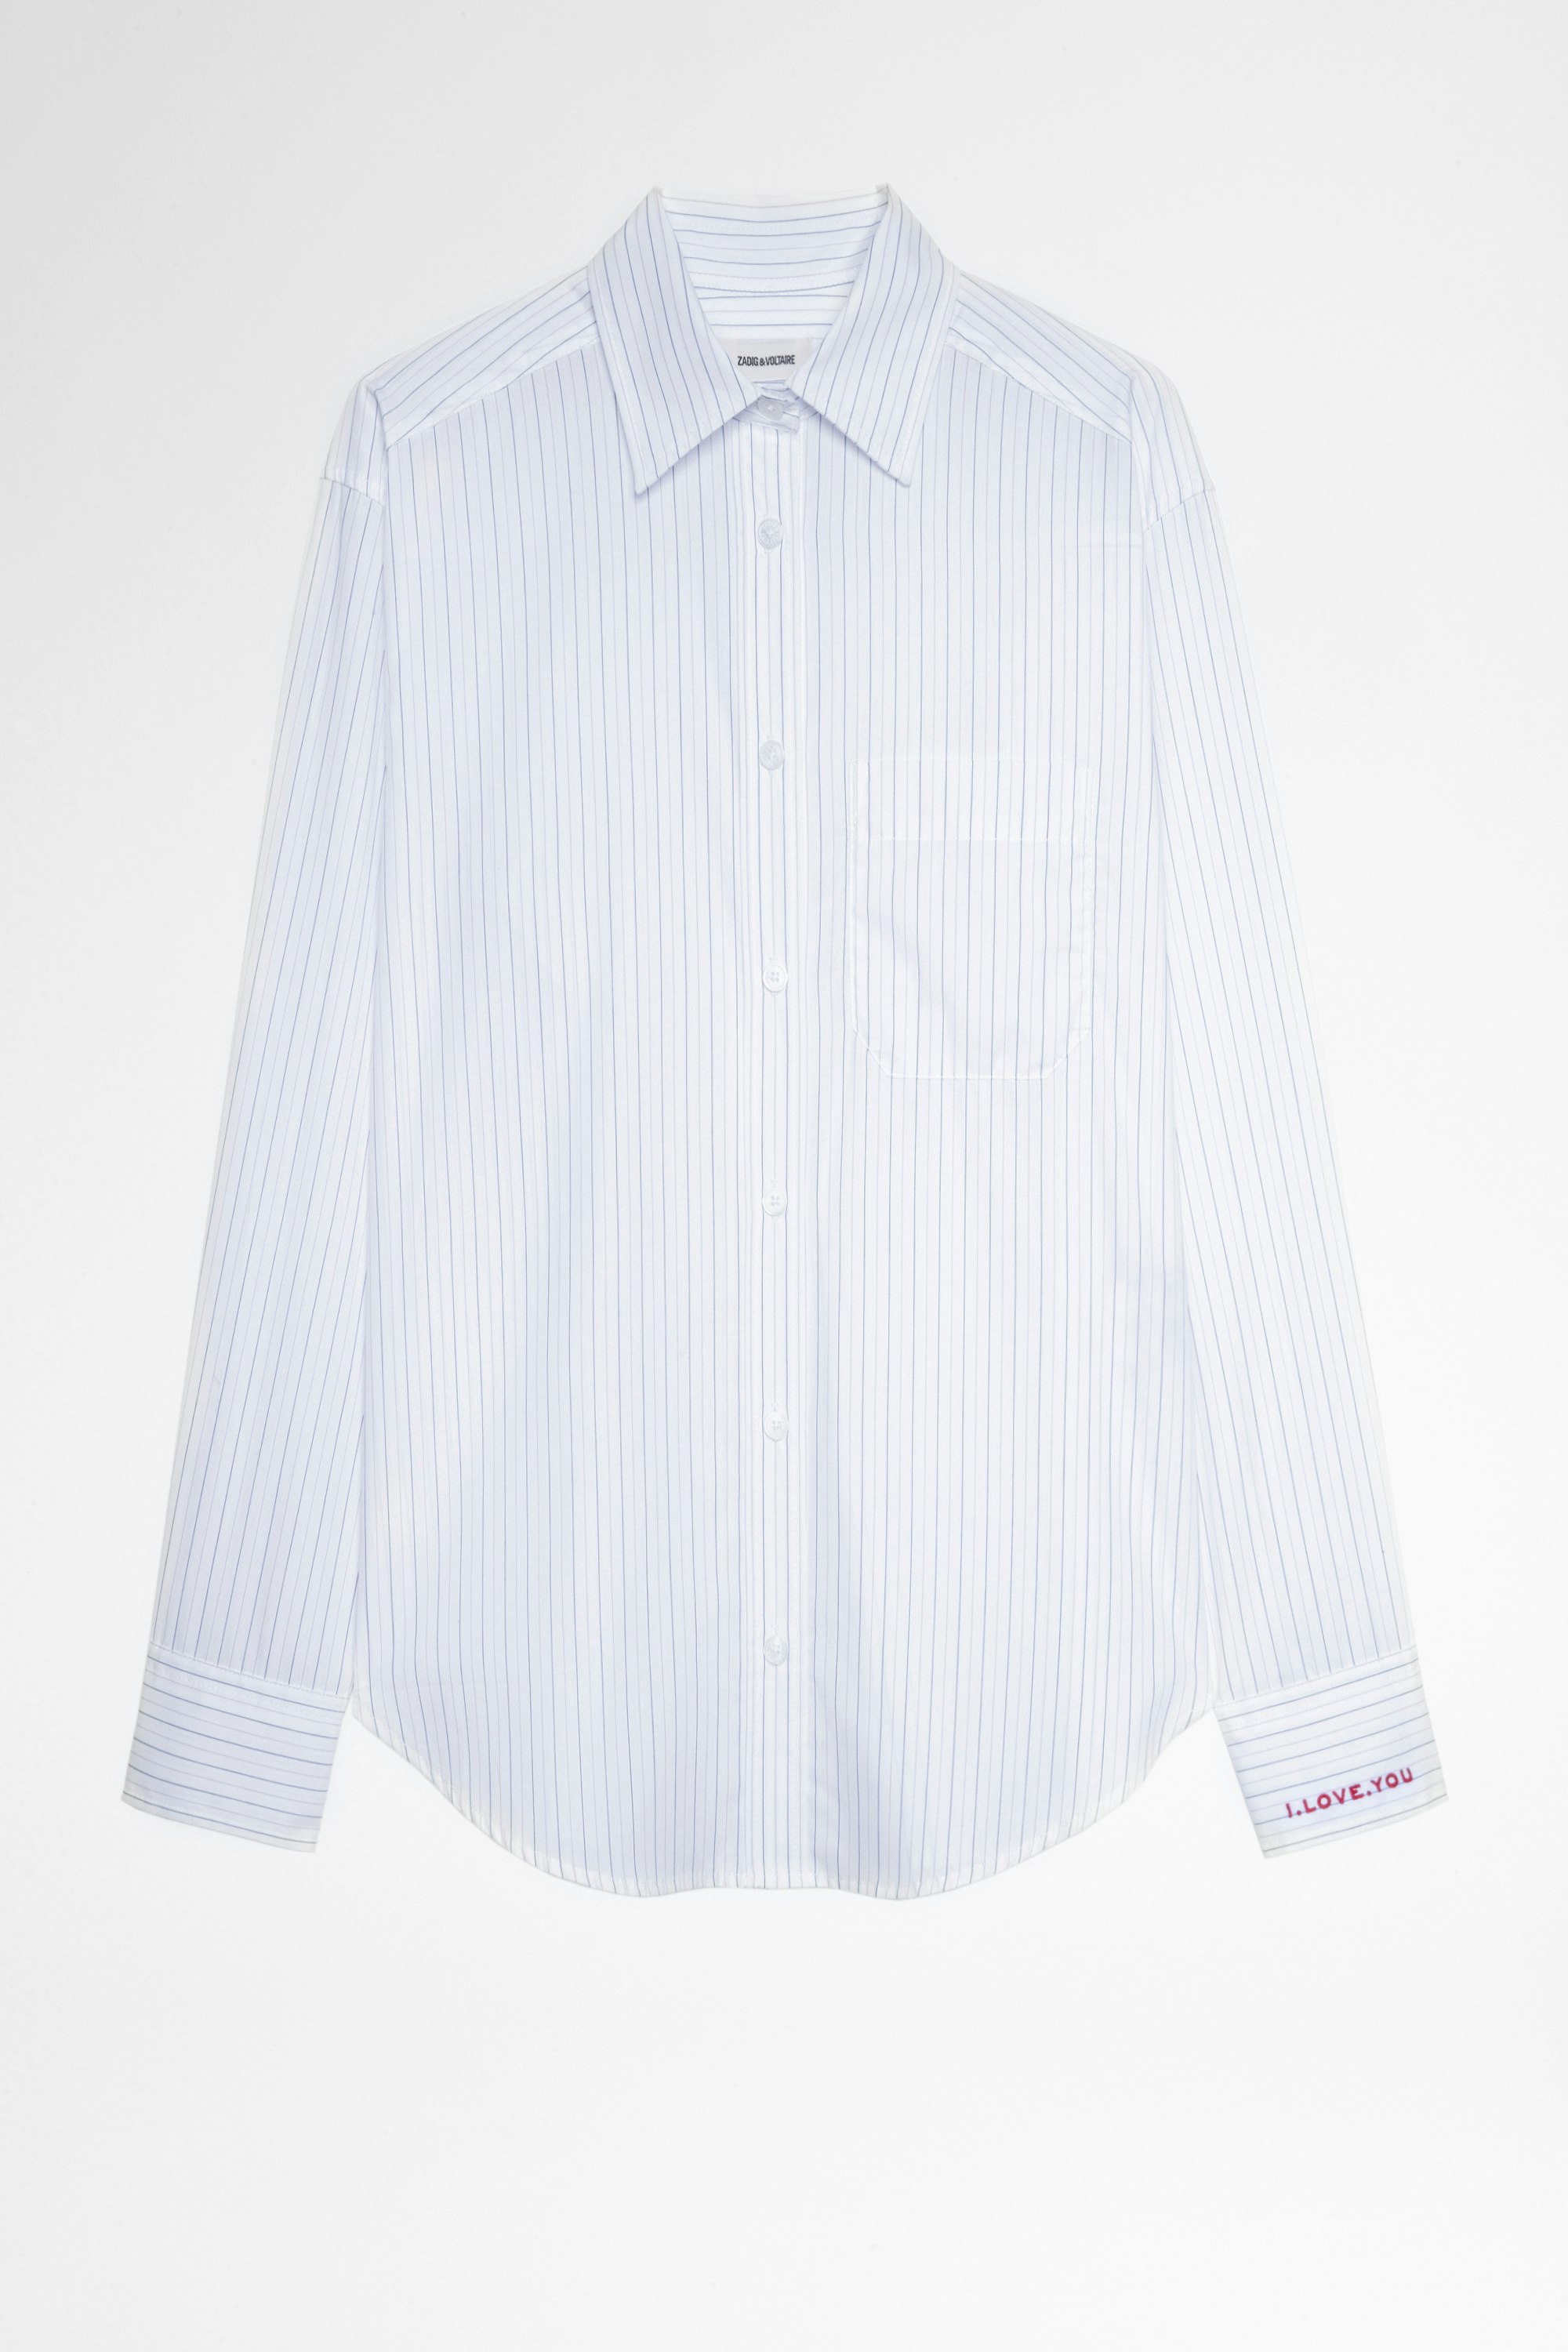 Hemd Tais Weiß gestreiftes Baumwollhemd für Damen. Hergestellt mit Fasern aus biologischem Anbau